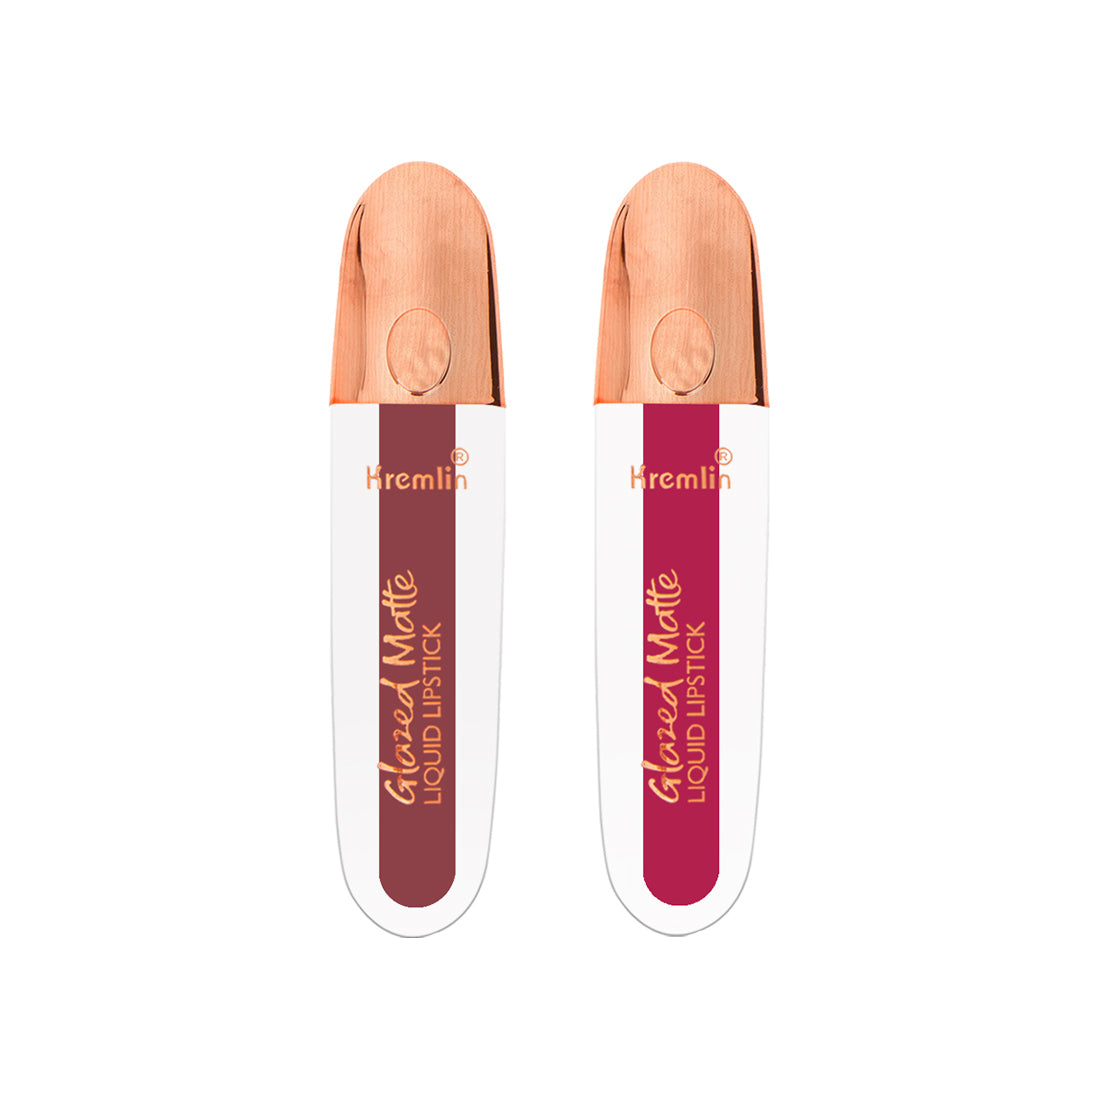 Kremlin Glazed Matte Liquid Lipstick Lips Pack of 2 (Virgin, Mermaid)